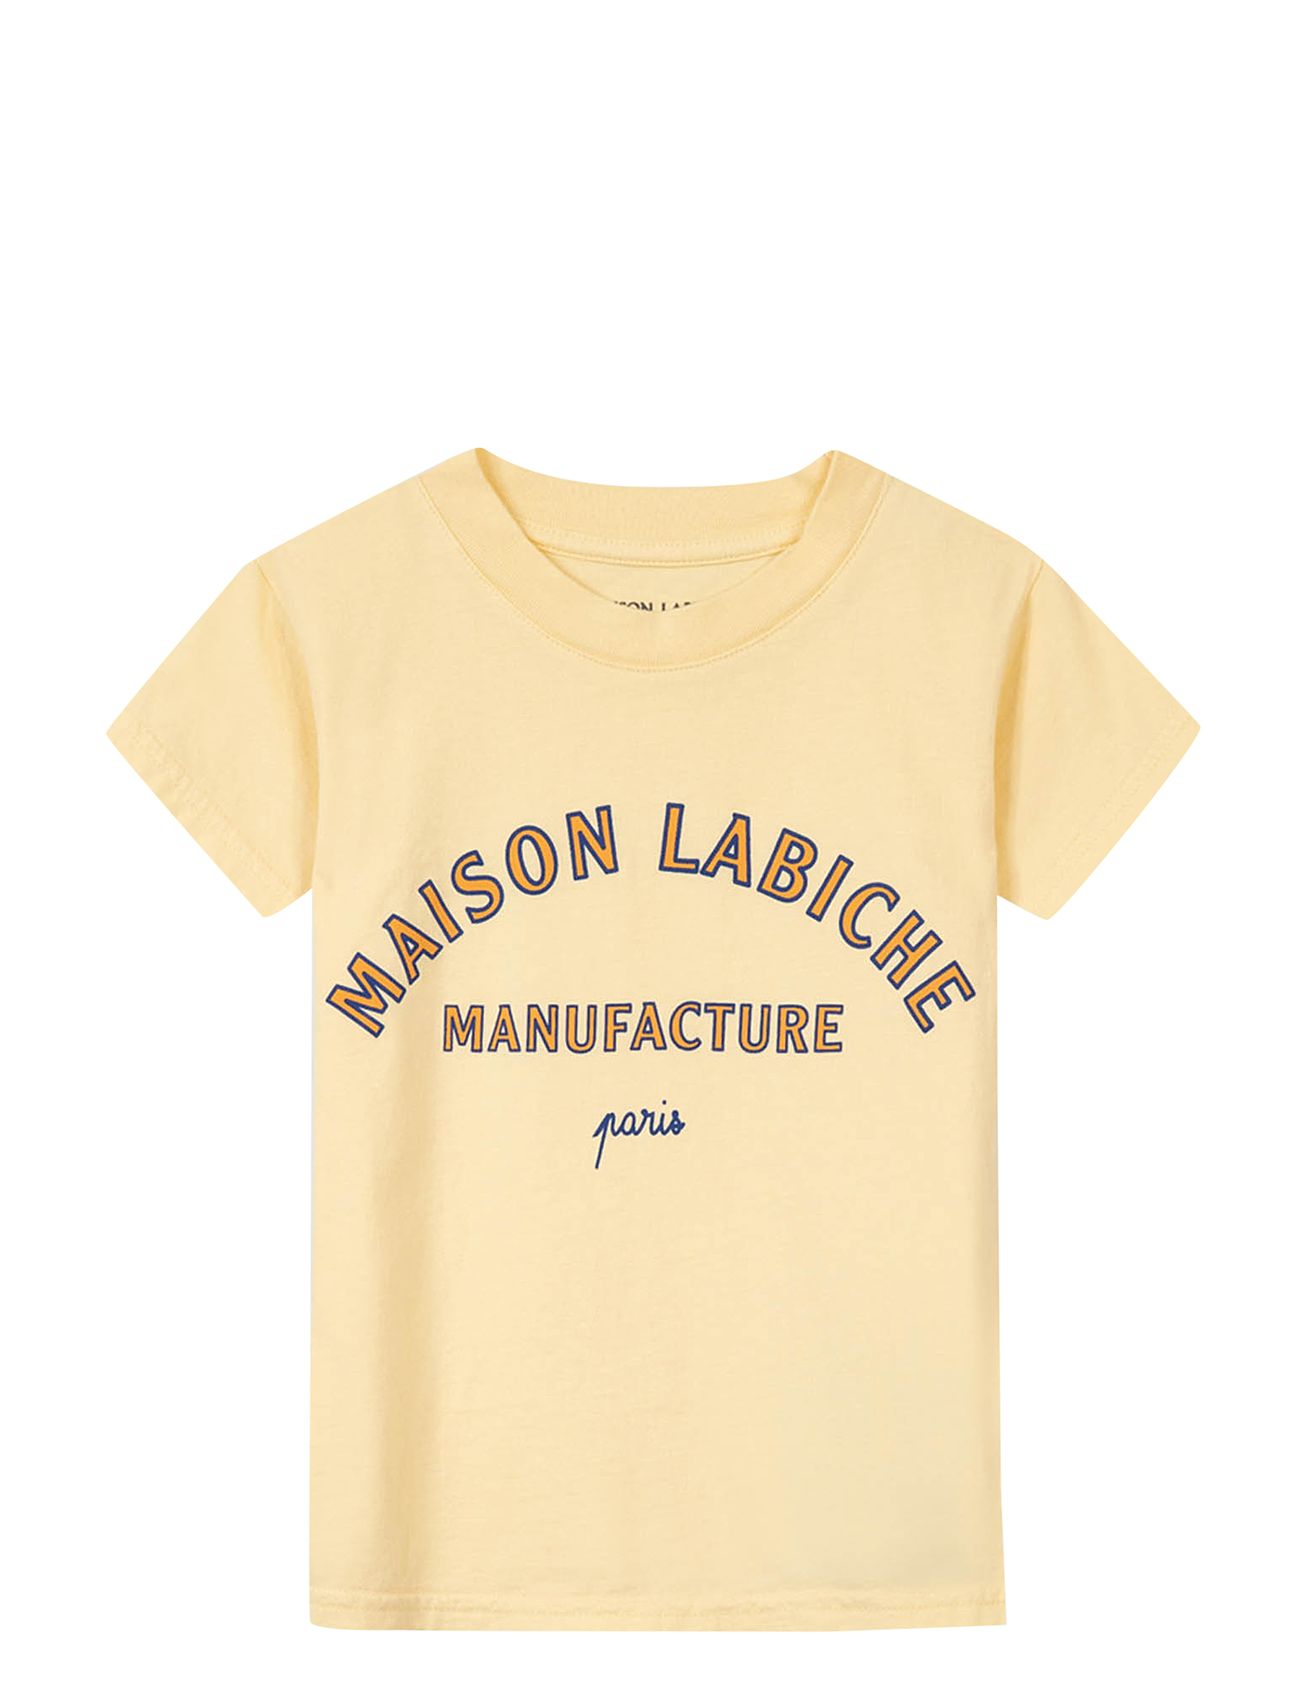 Leon Manufacture Tops T-shirts Short-sleeved Yellow Maison Labiche Paris